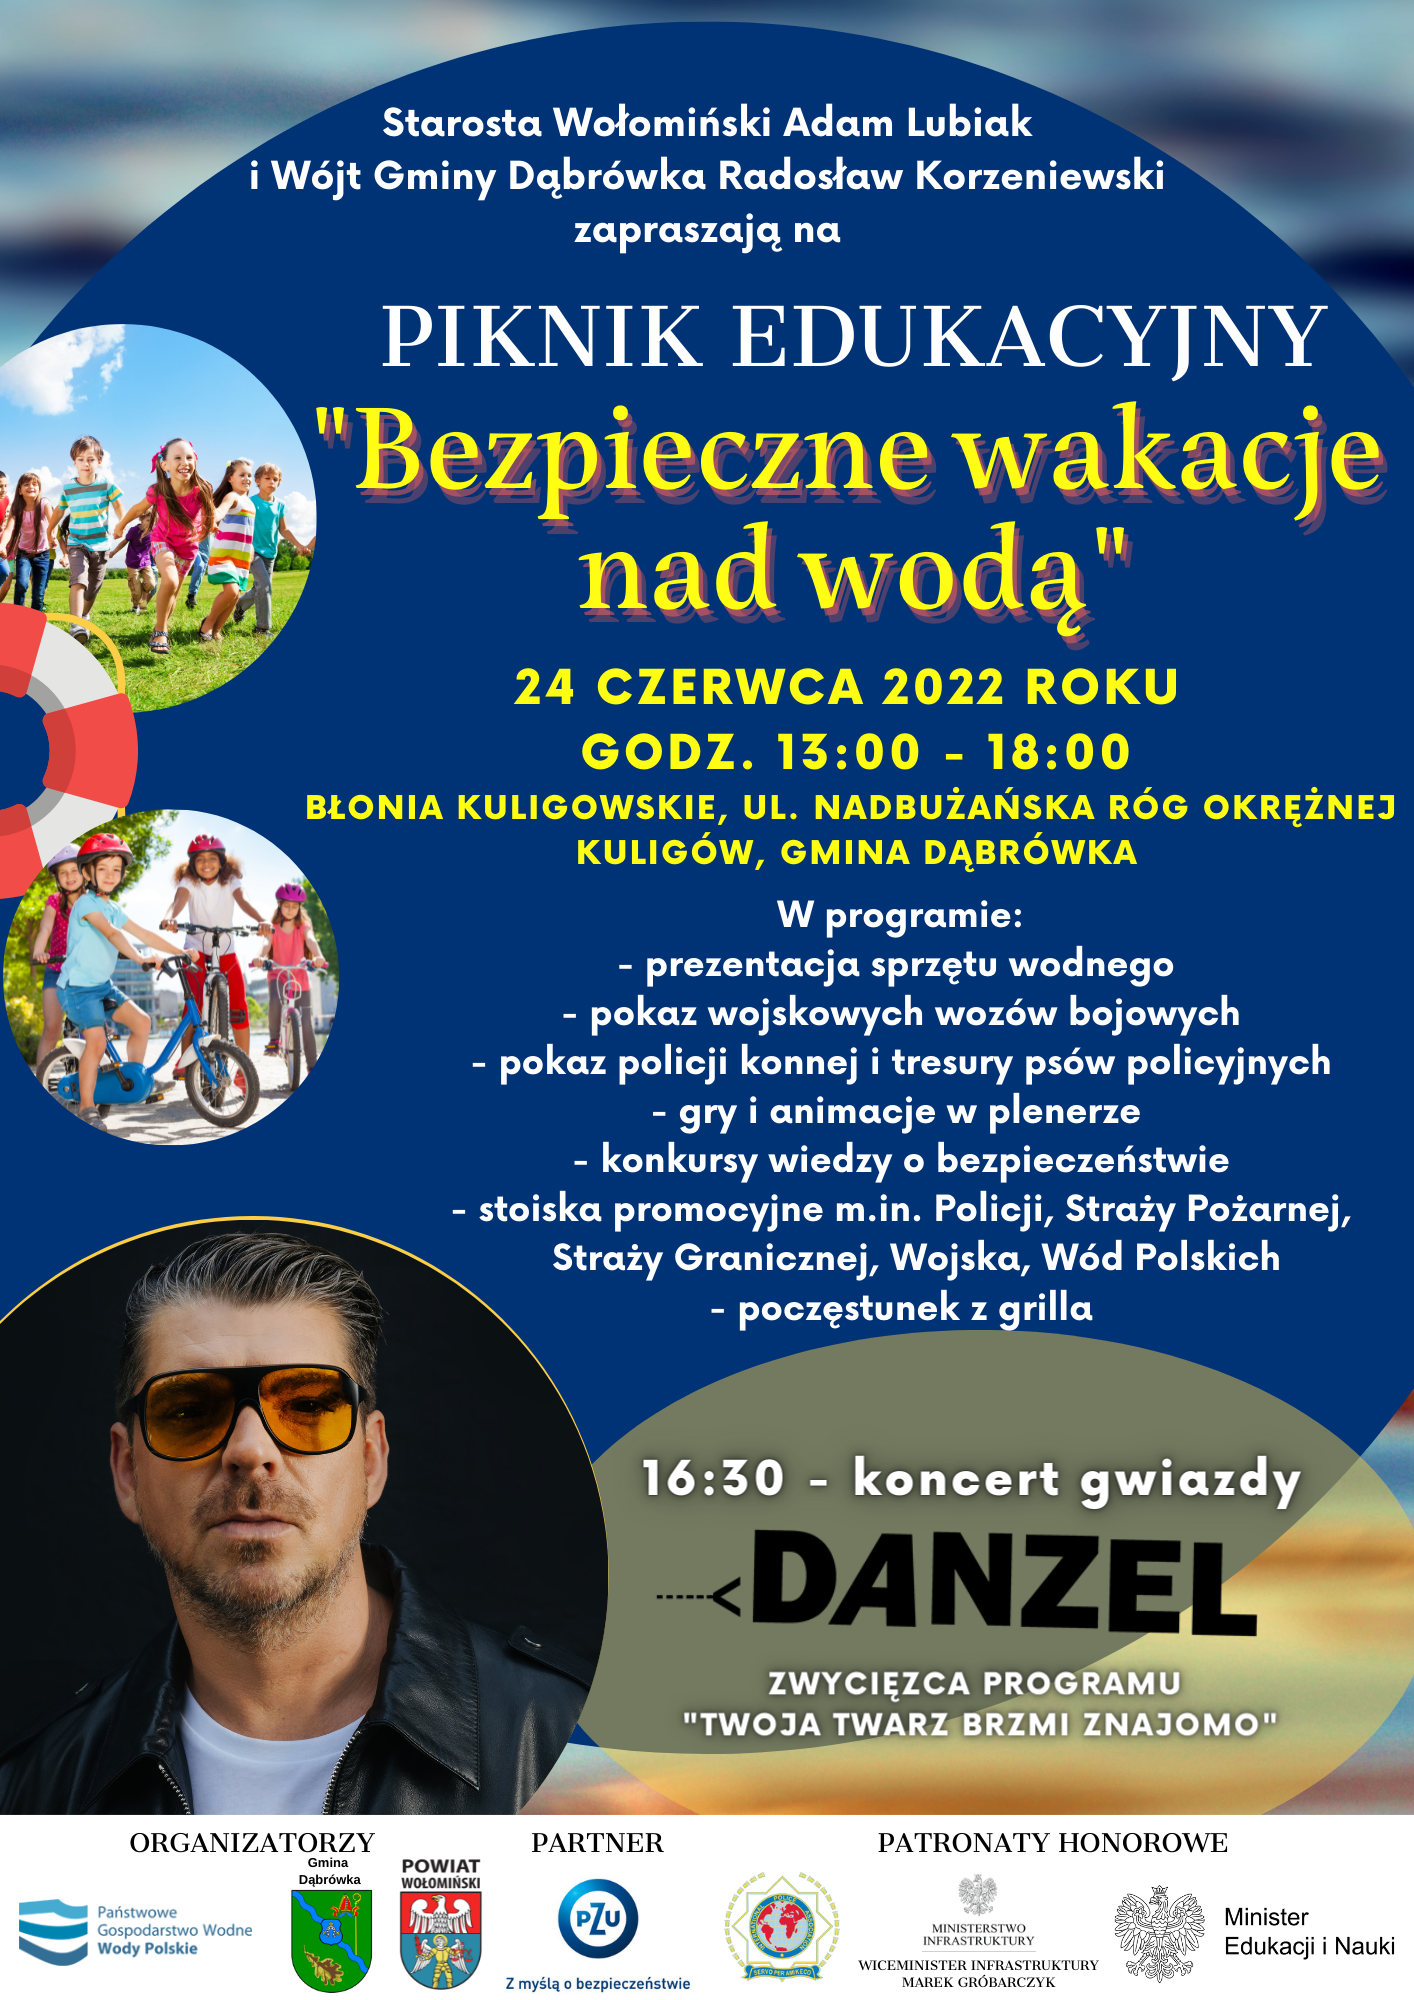 Piknik_Edukacyjny_Bezpieczne_wakacje_nad_wodą